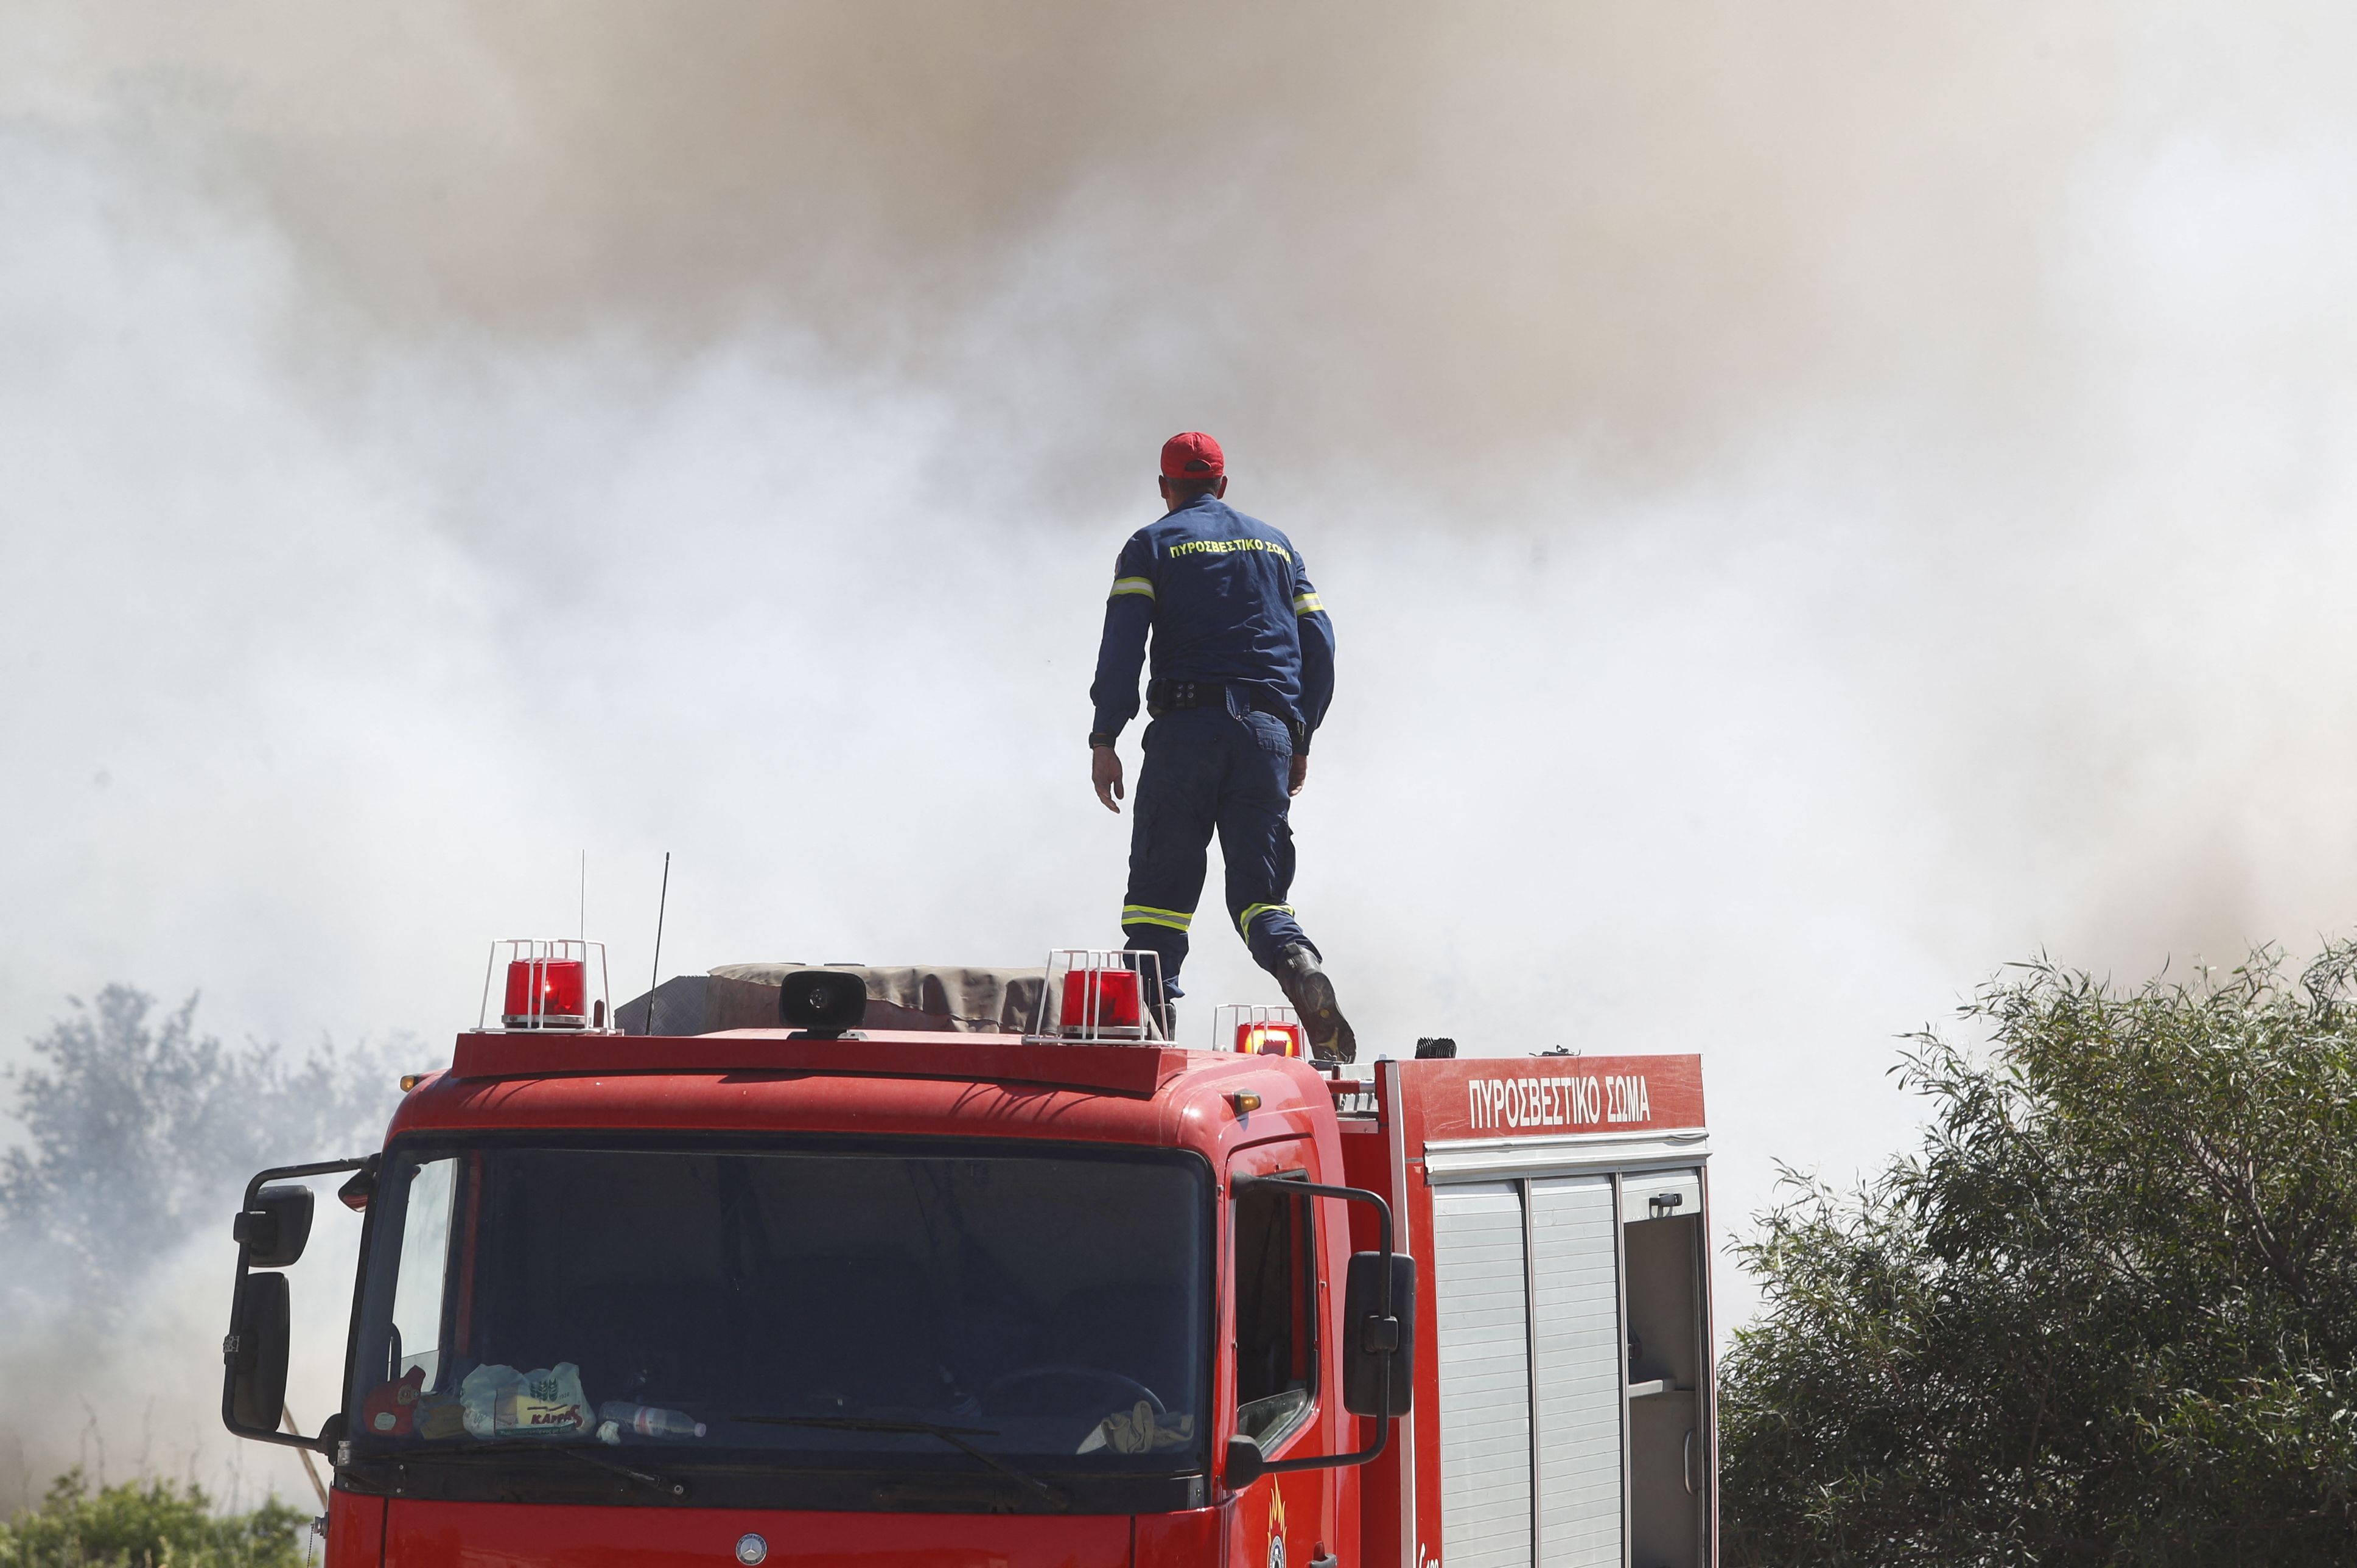 Le sud-est d'Athènes touché par un incendie fortement attisé